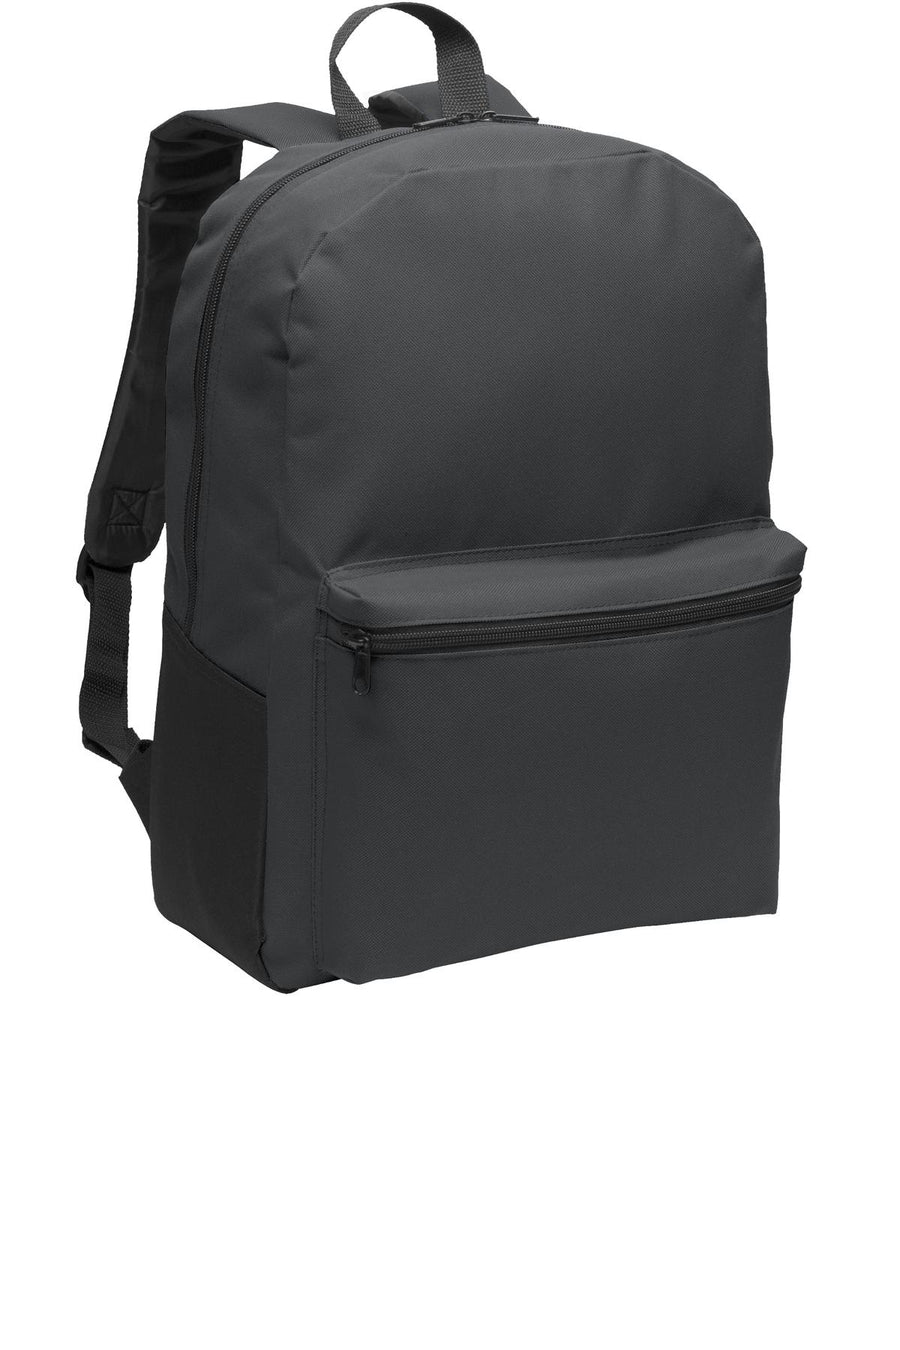 Port Authority¬Æ Value Backpack. BG203